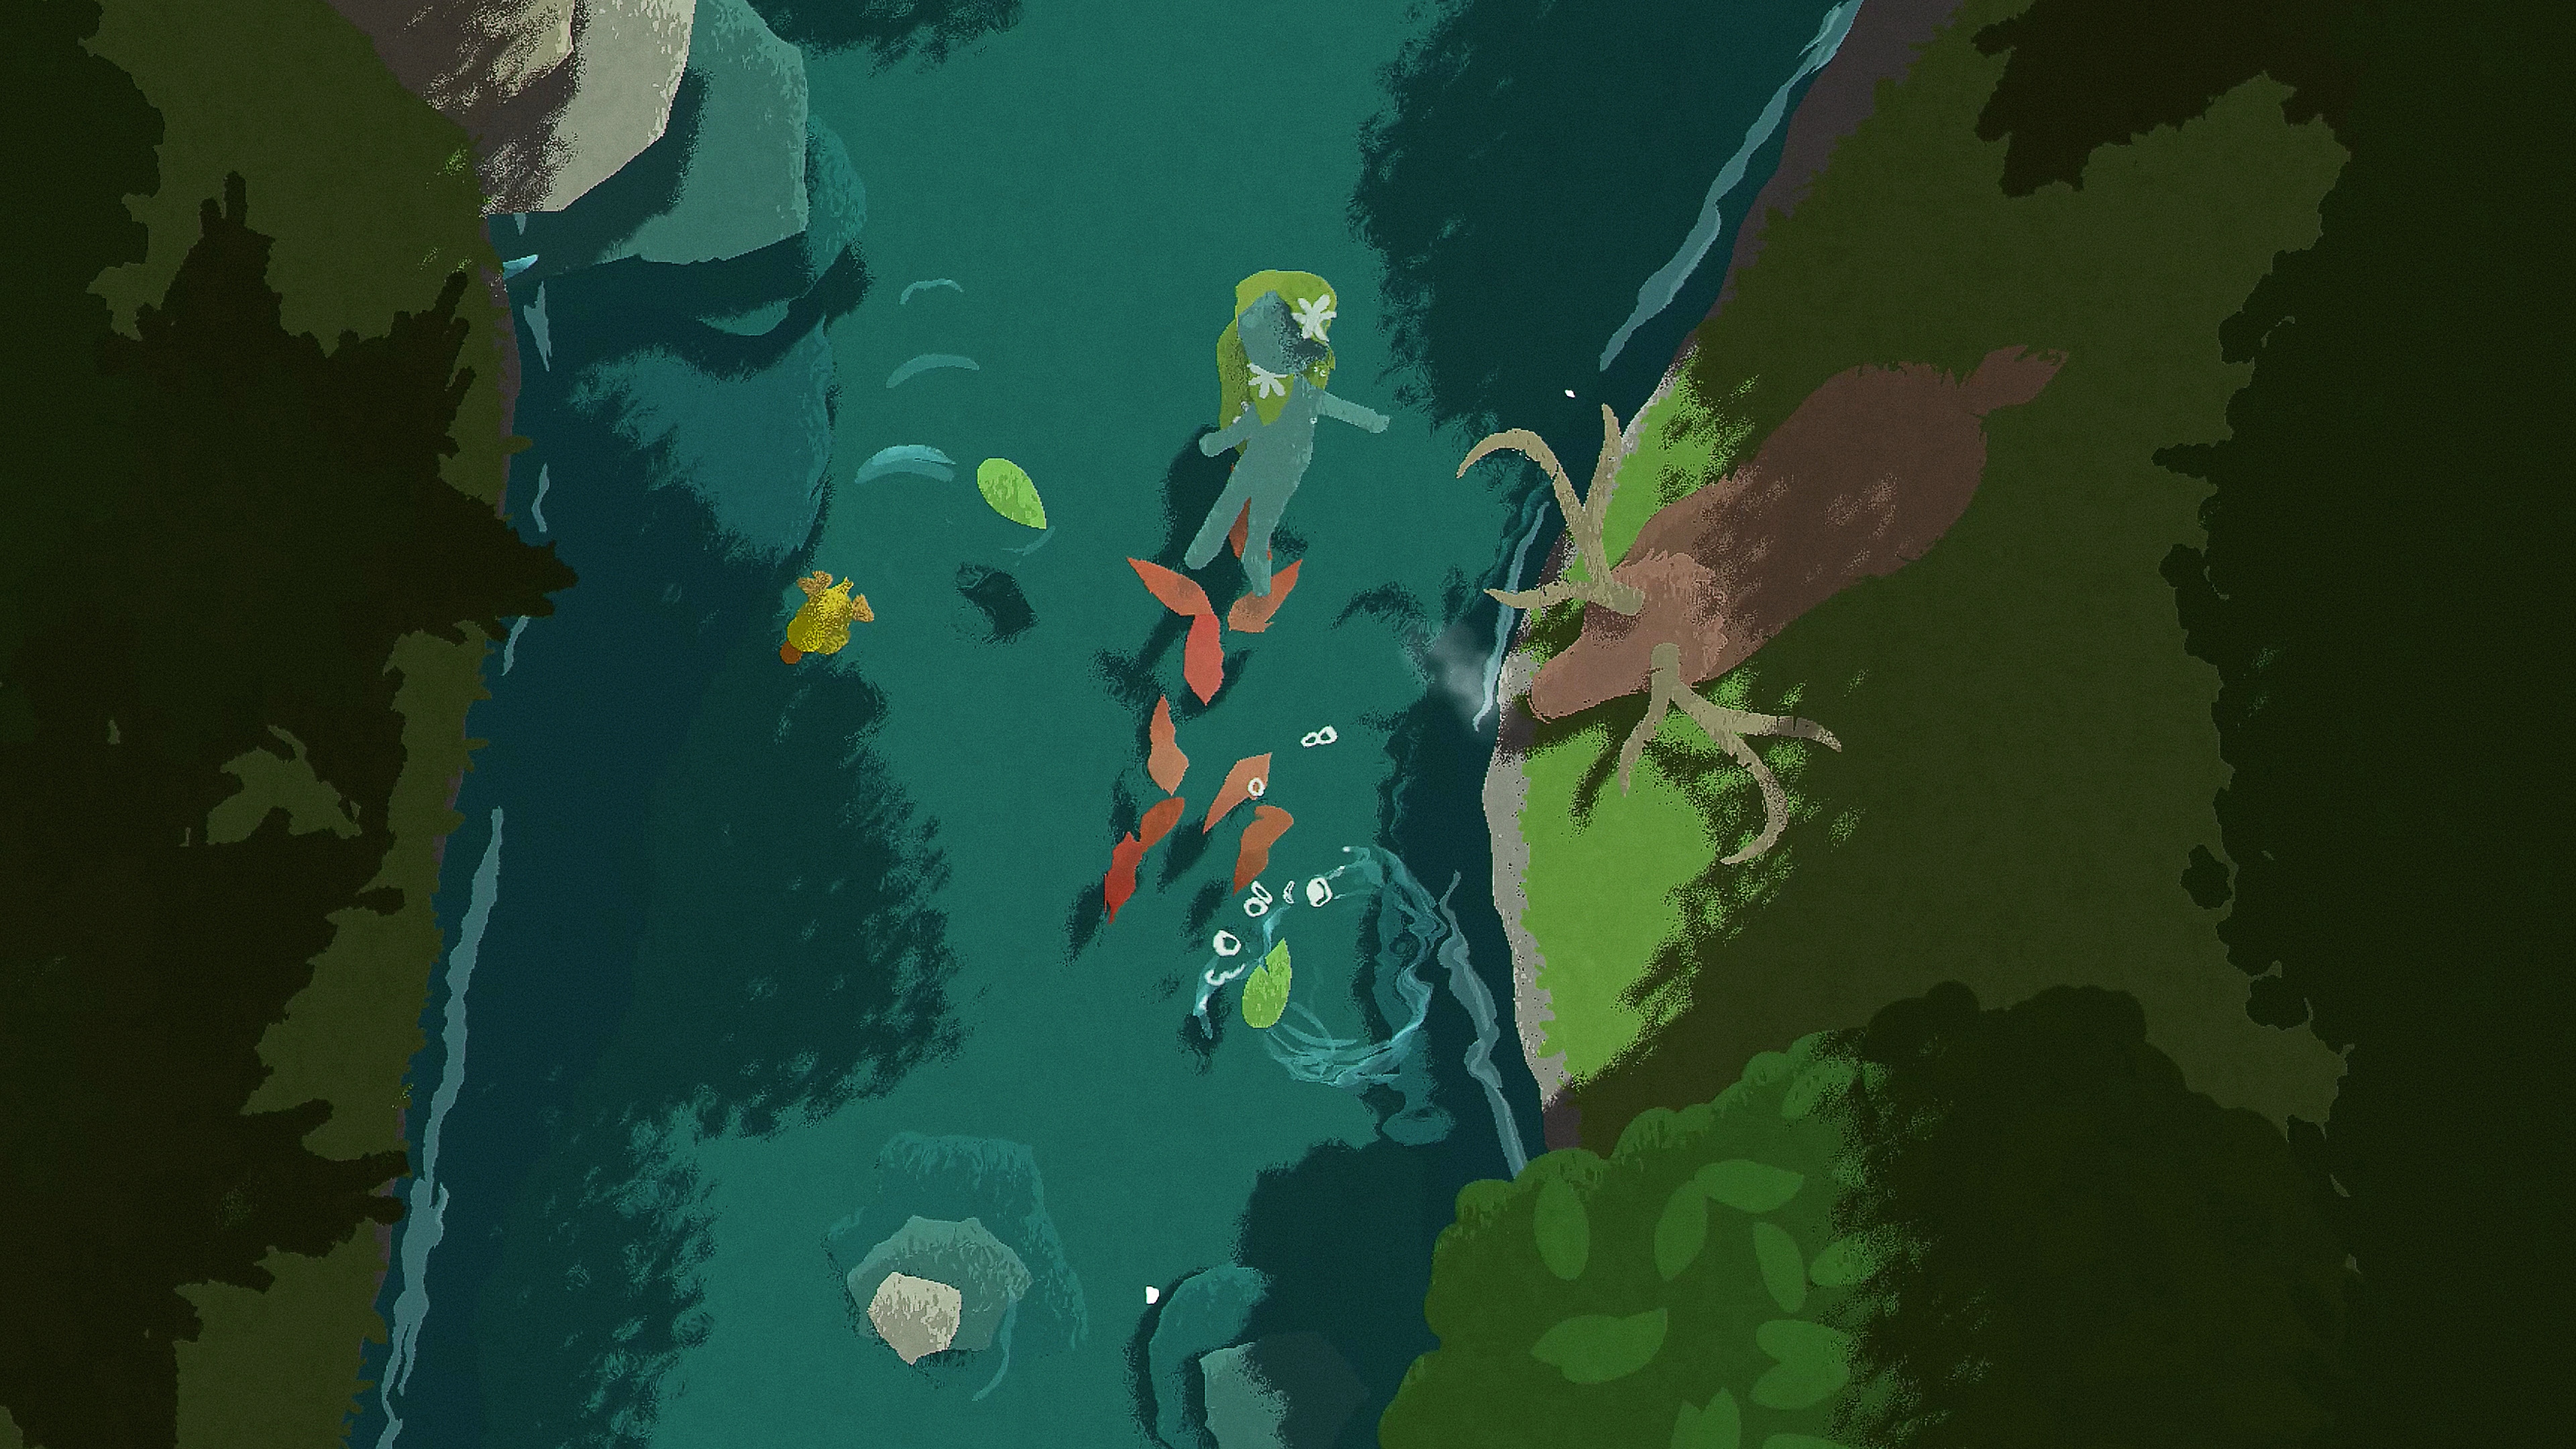 Naiad-screenshot van een personage dat in een rivier drijft terwijl een hert toekijkt vanaf de oever